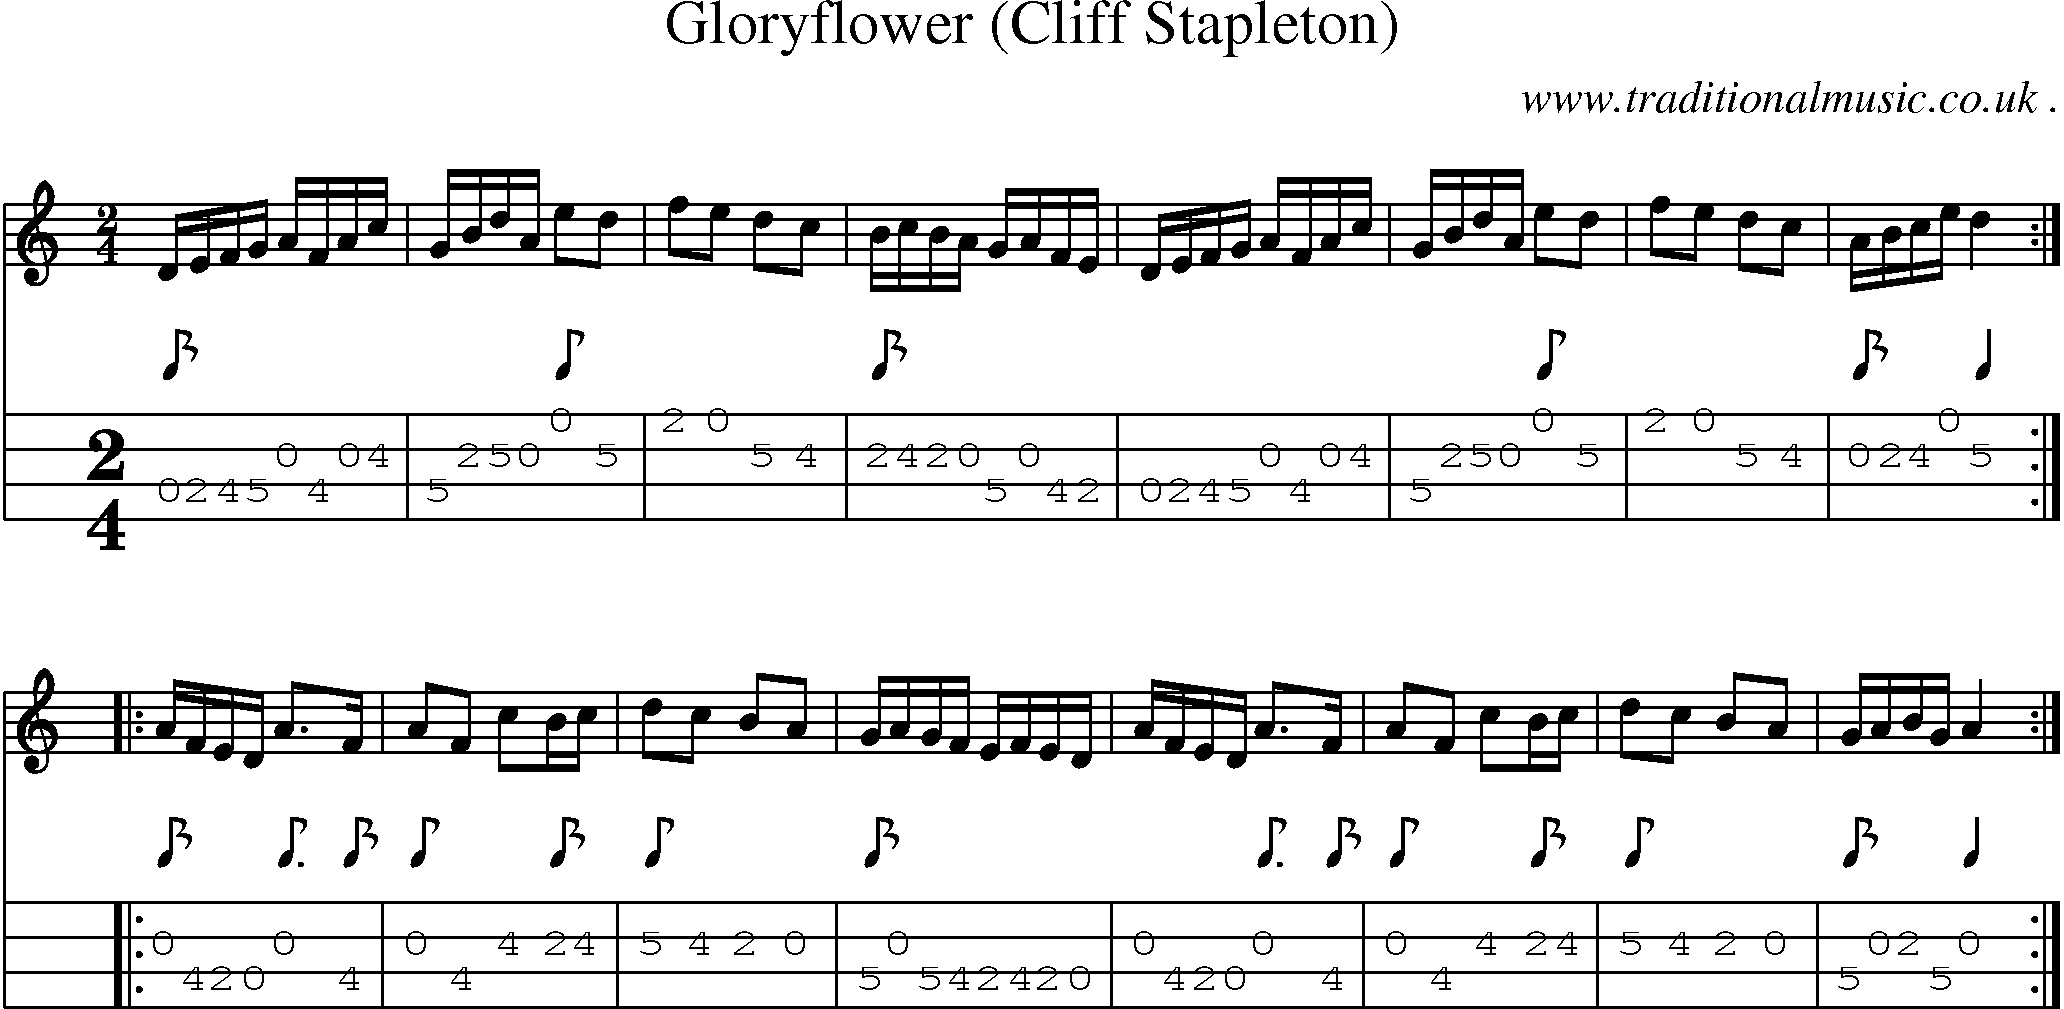 Sheet-Music and Mandolin Tabs for Gloryflower (cliff Stapleton)